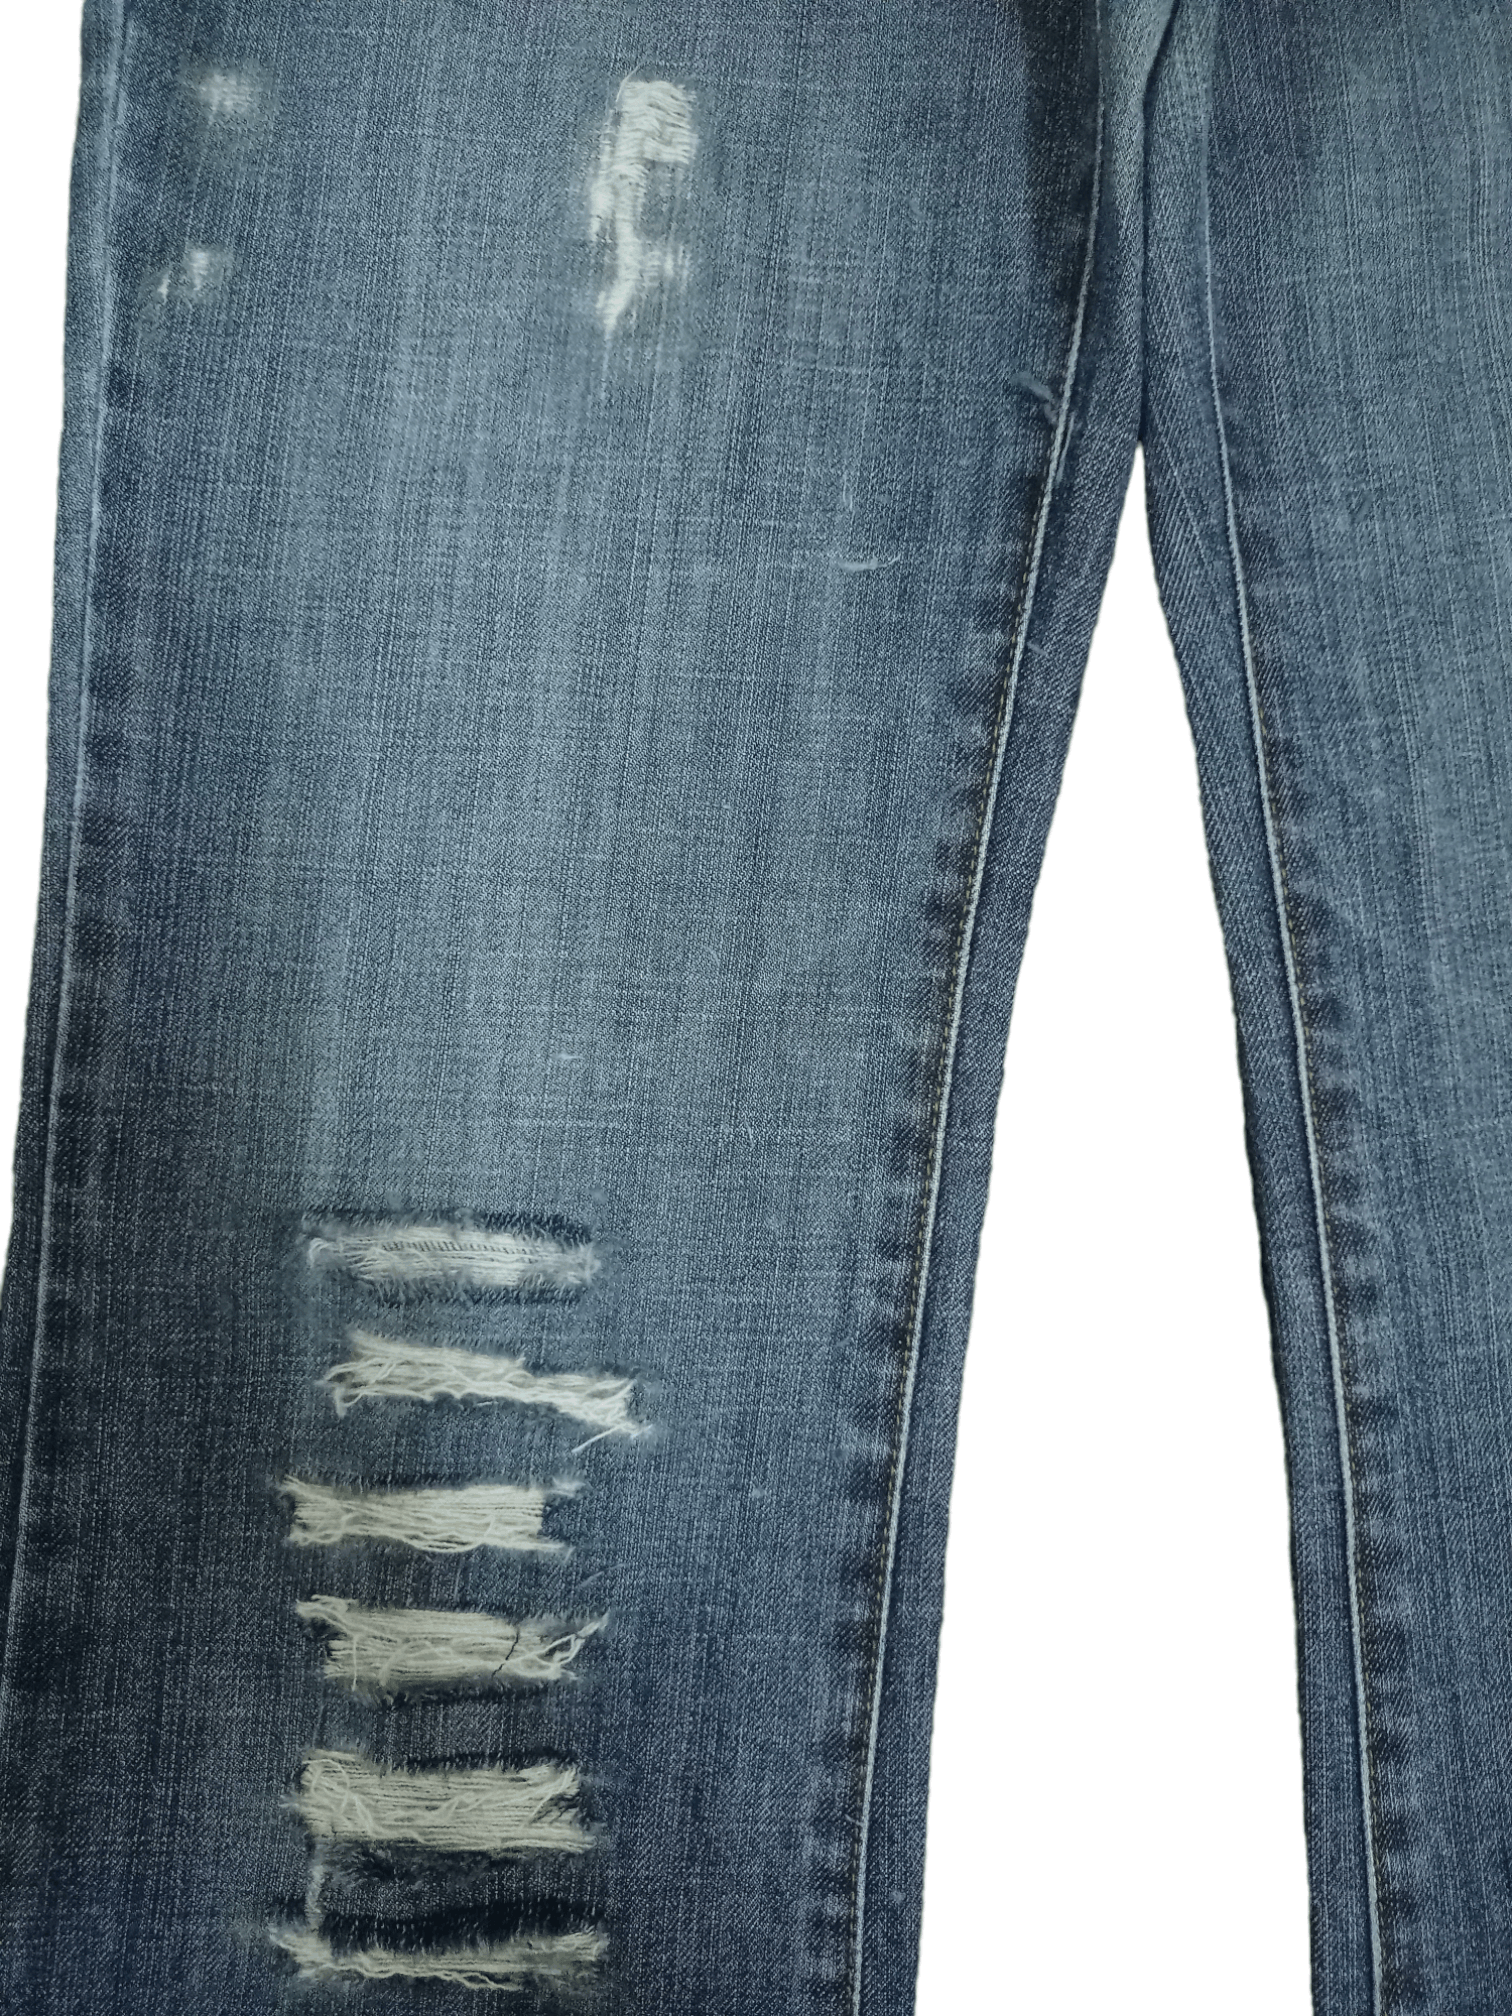 Uniqlo Vintage Japanese Uniqlo Blue Wash Flare Jeans 27x29 Size US 27 - 6 Thumbnail